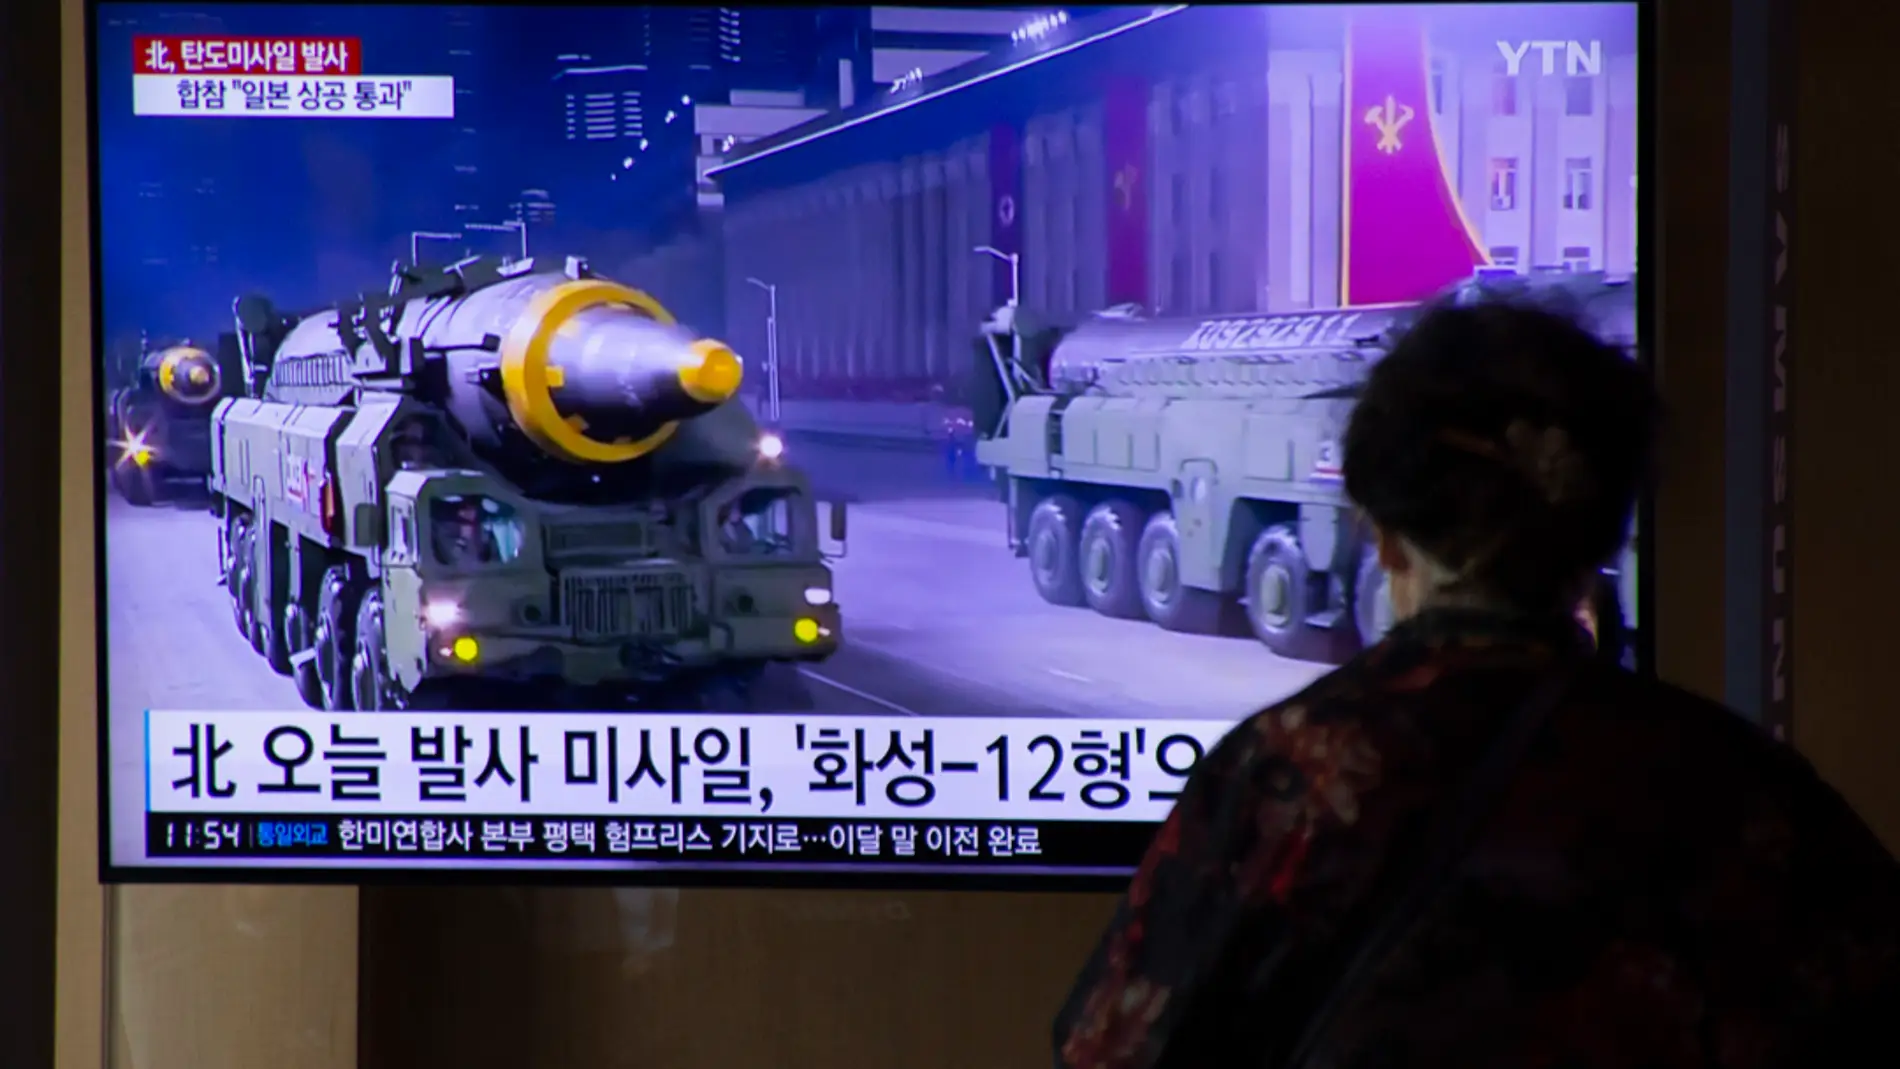 La noticia del lanzamiento del misil norcoreano en una pantalla en Seúl/ EFE/EPA/JEON HEON-KYUN